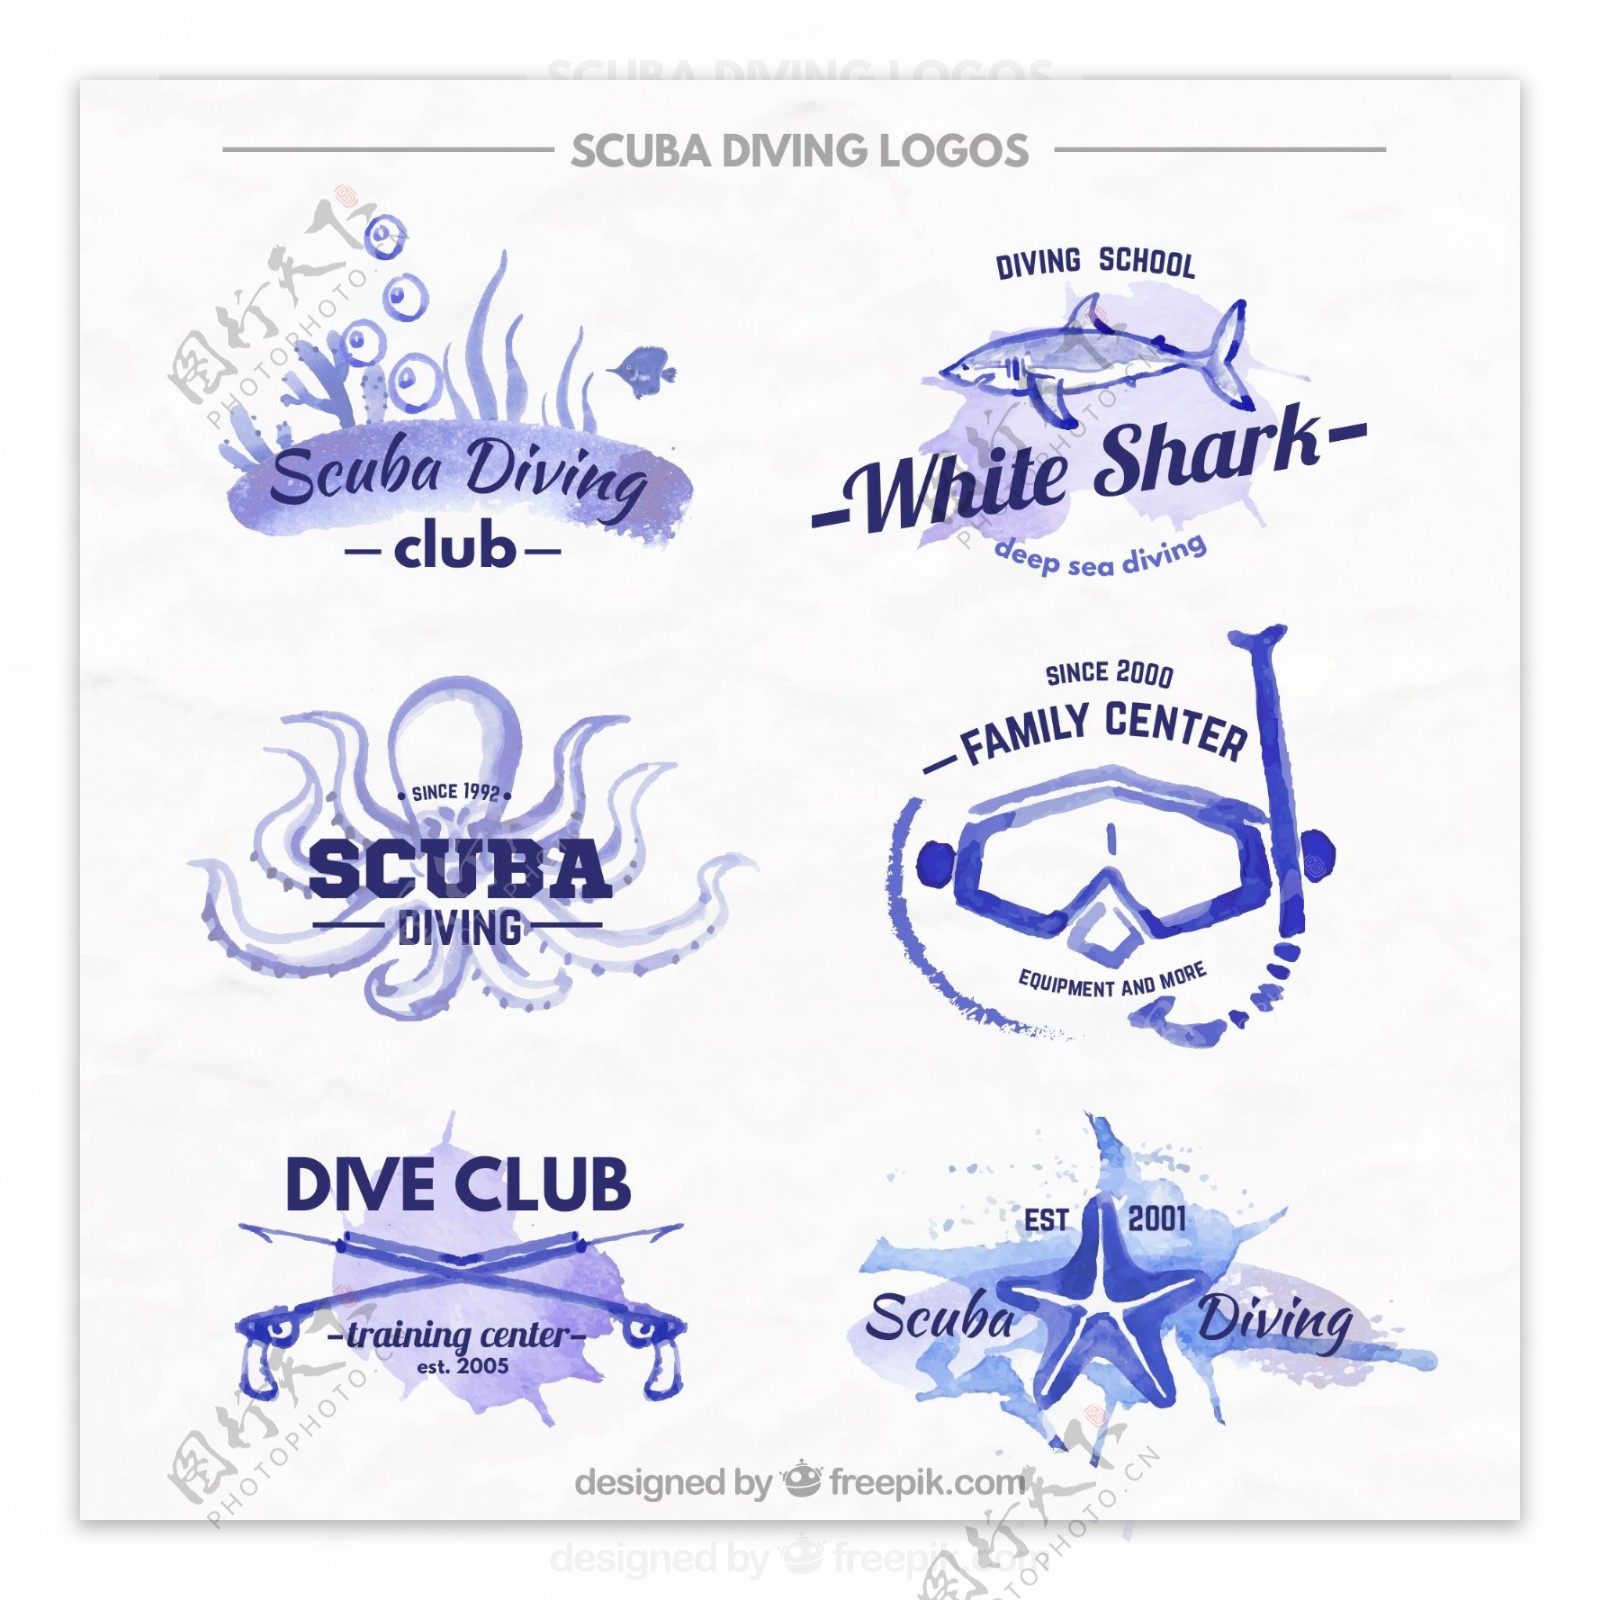 9款蓝色专业潜水俱乐部标志矢量图